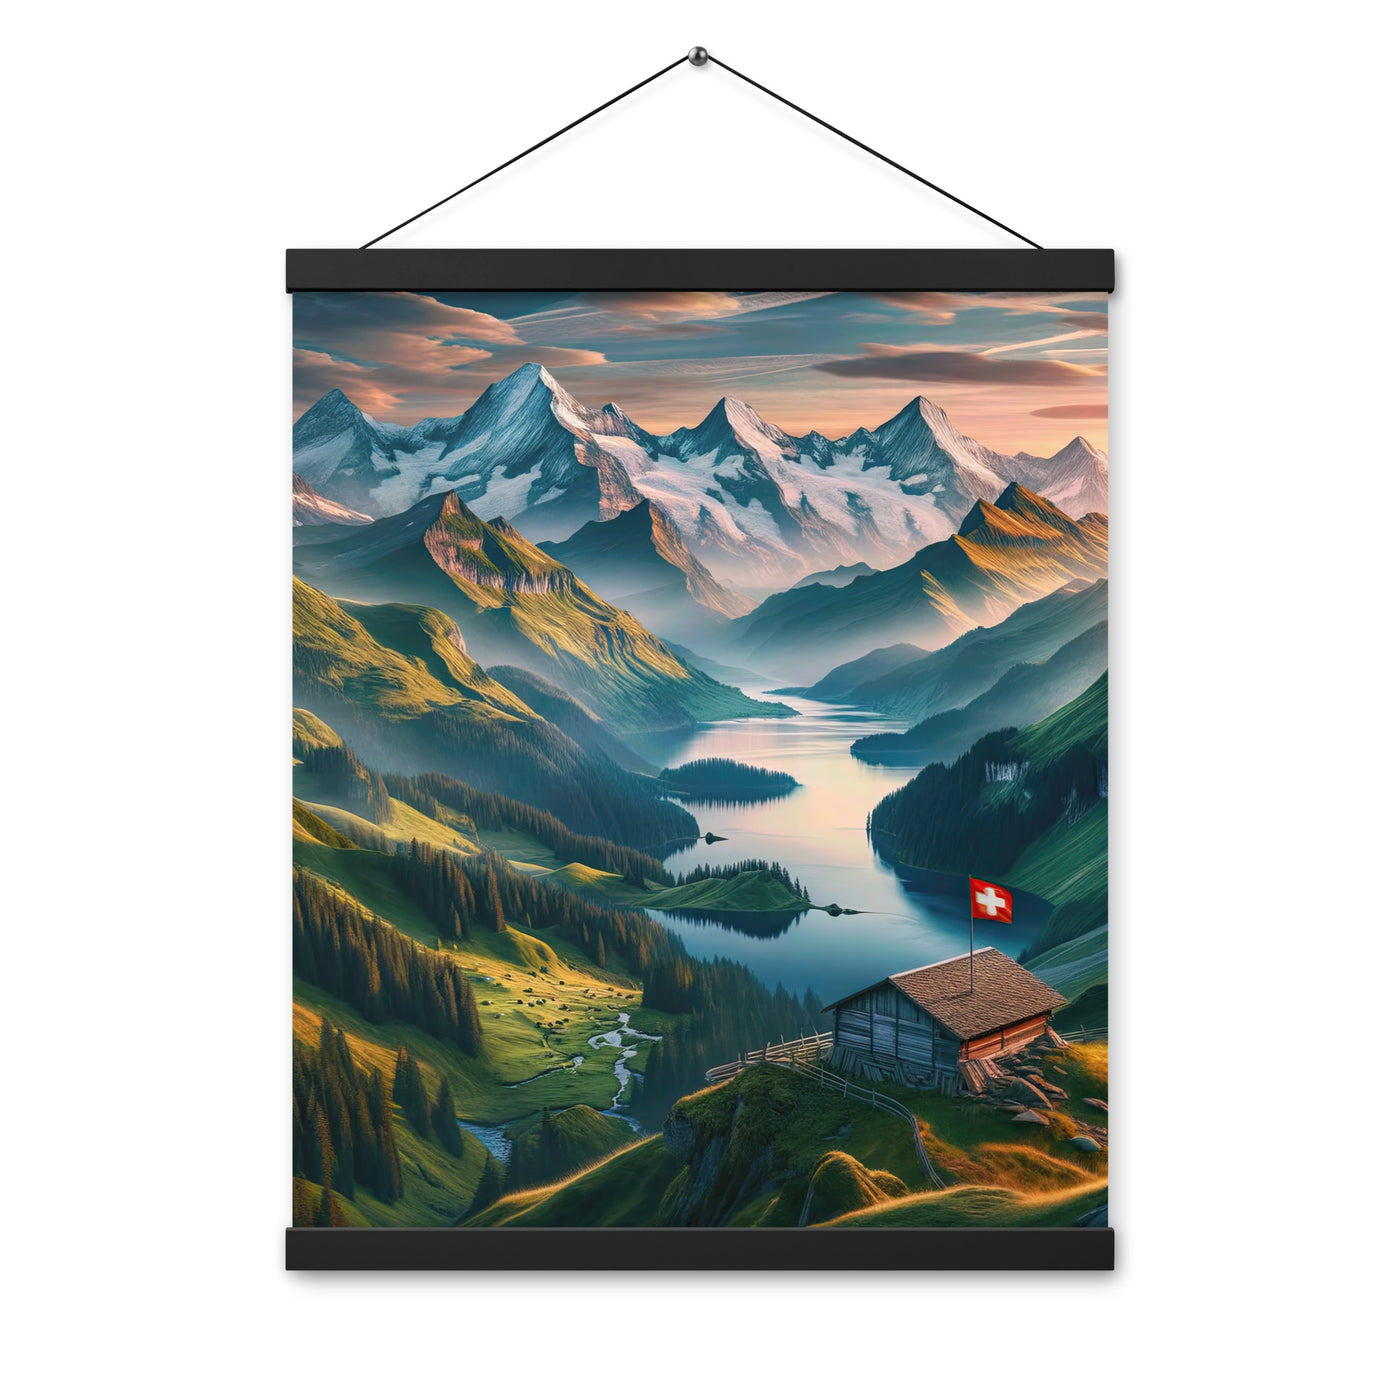 Schweizer Flagge, Alpenidylle: Dämmerlicht, epische Berge und stille Gewässer - Premium Poster mit Aufhängung berge xxx yyy zzz 40.6 x 50.8 cm